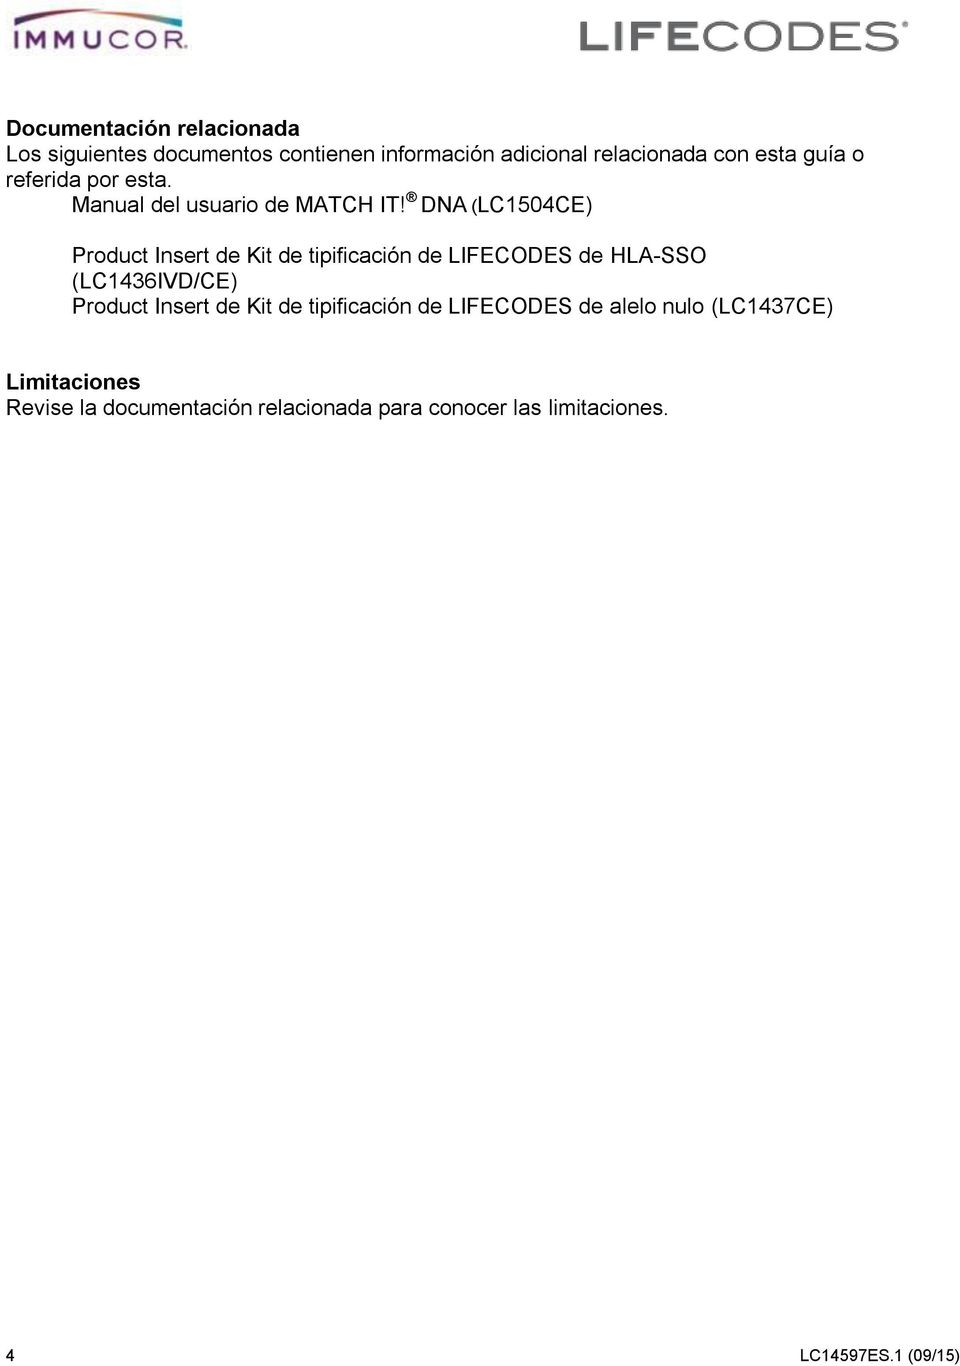 DNA (LC1504CE) Product Insert de Kit de tipificación de LIFECODES de HLA-SSO (LC1436IVD/CE) Product Insert